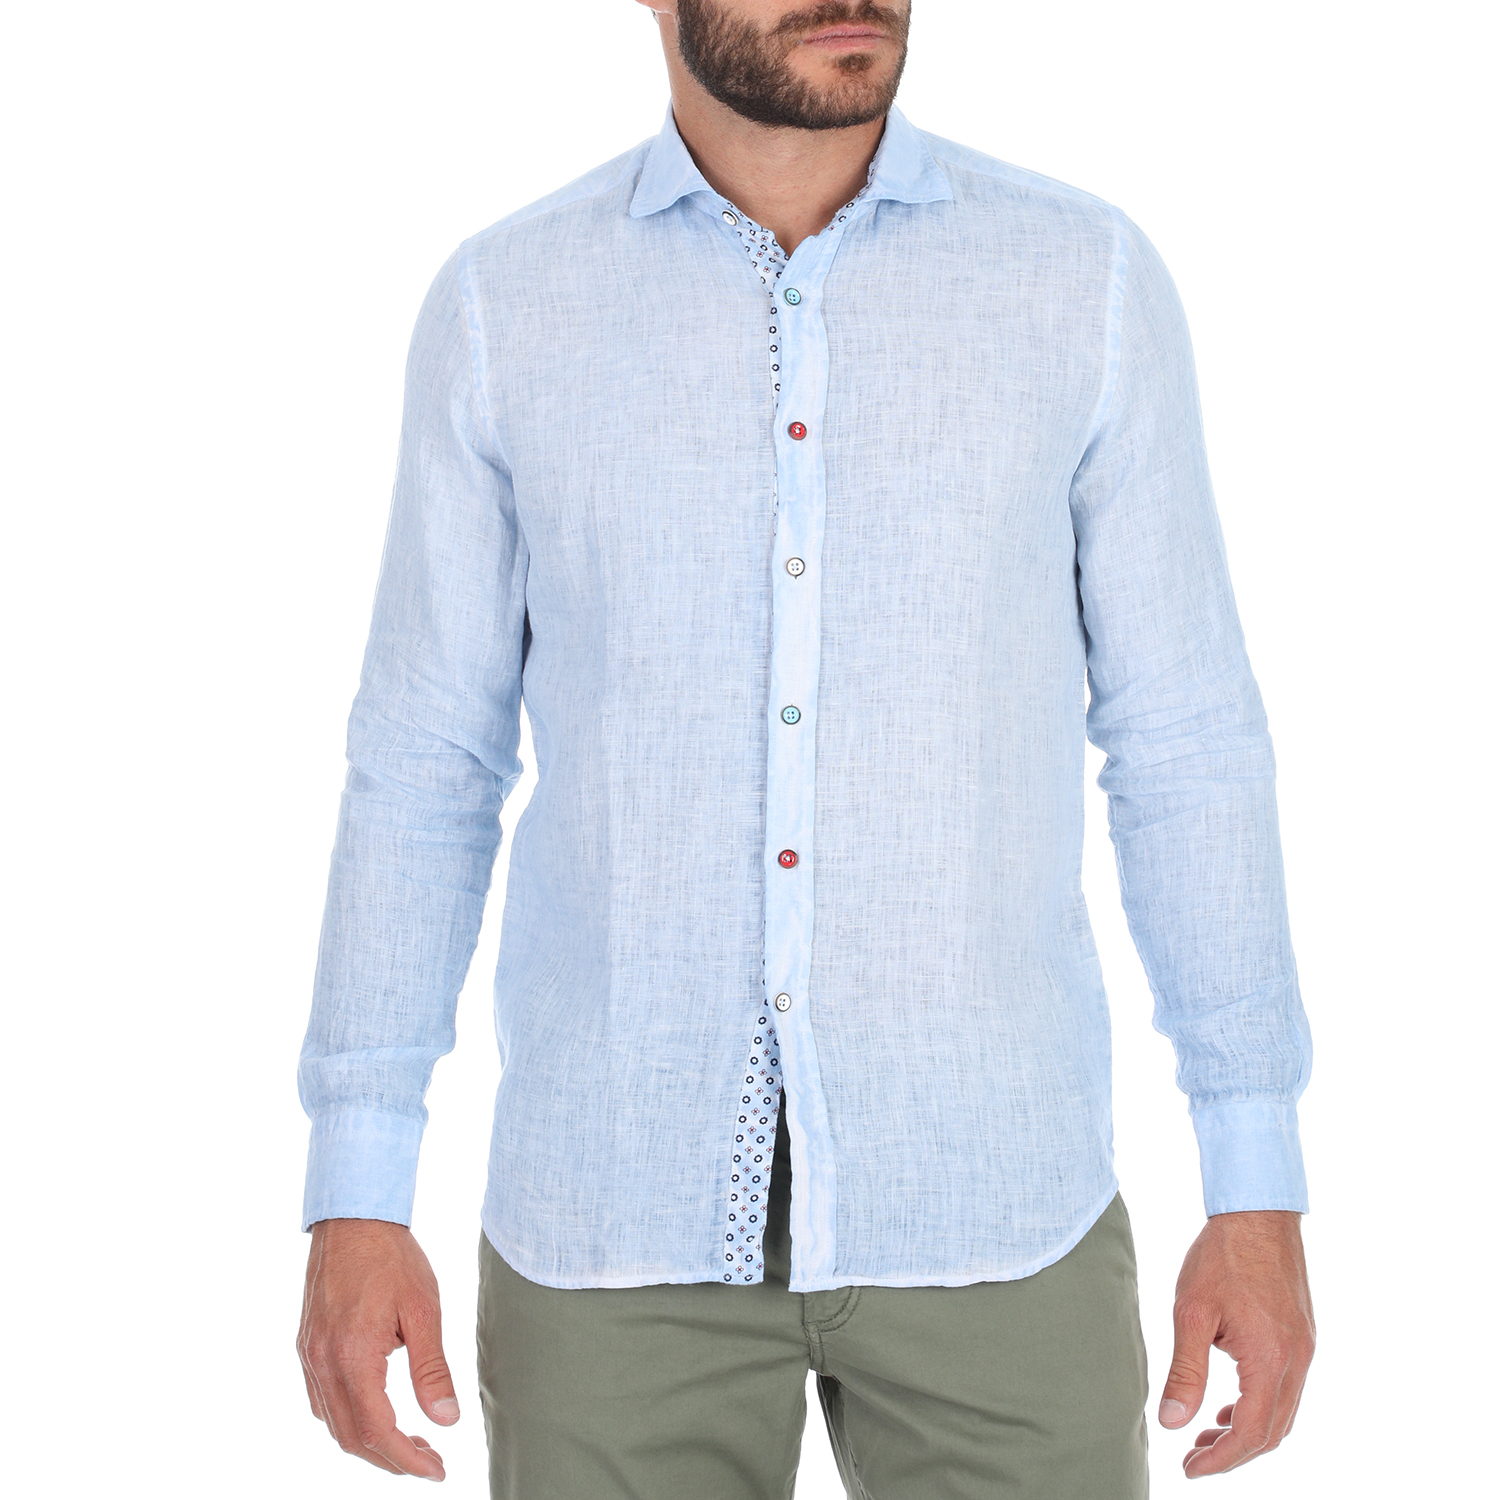 Ανδρικά/Ρούχα/Πουκάμισα/Μακρυμάνικα SSEINSE - Ανδρικό πουκάμισο SSEINSE ανοιχτό μπλε